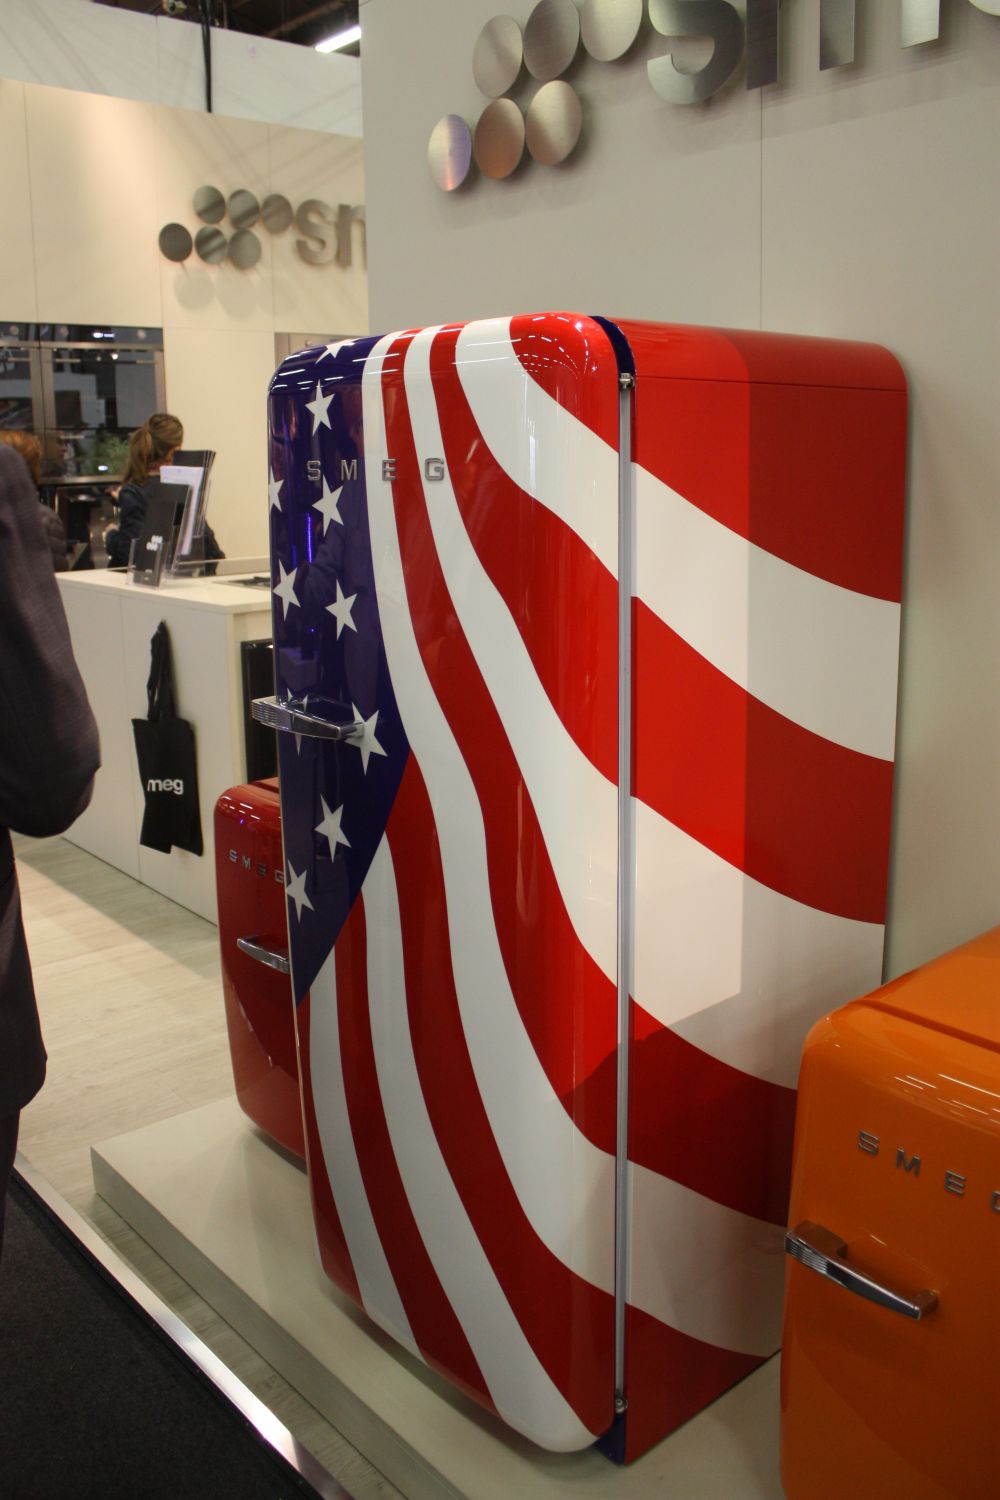 Les réfrigérateurs colorés ne sont pas toujours monochromes. Celui-ci, par exemple, présente un design patriotique.